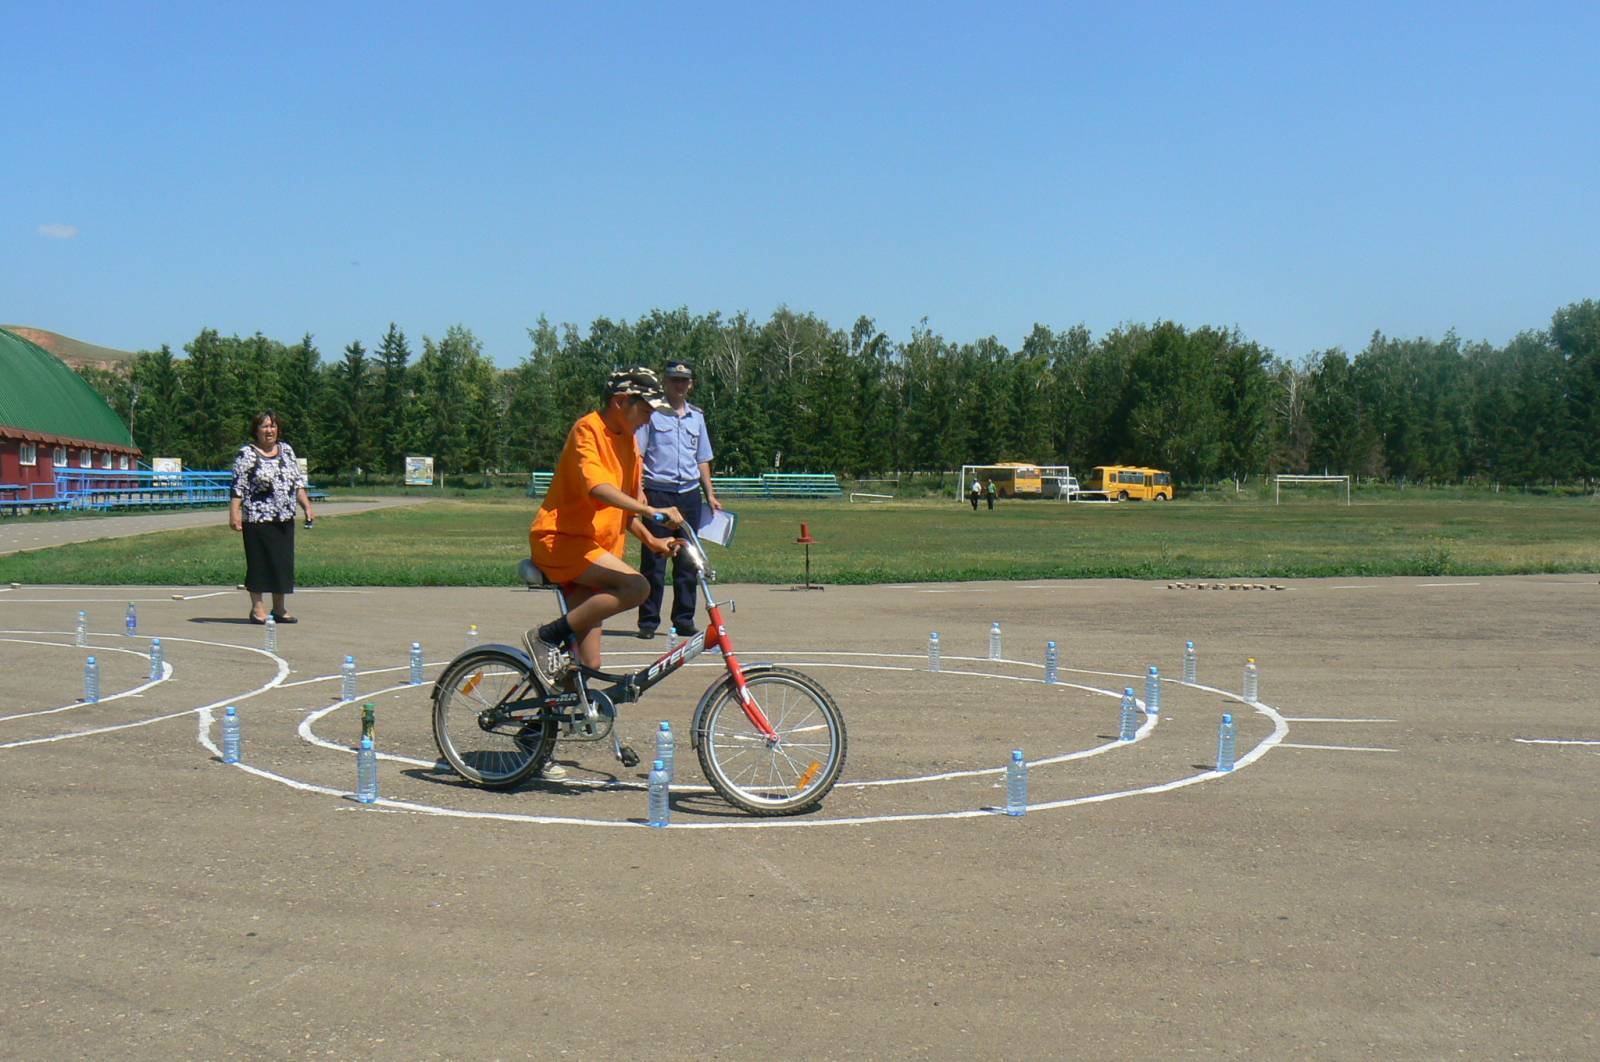 Размеры препятствий фигурное вождение велосипеда